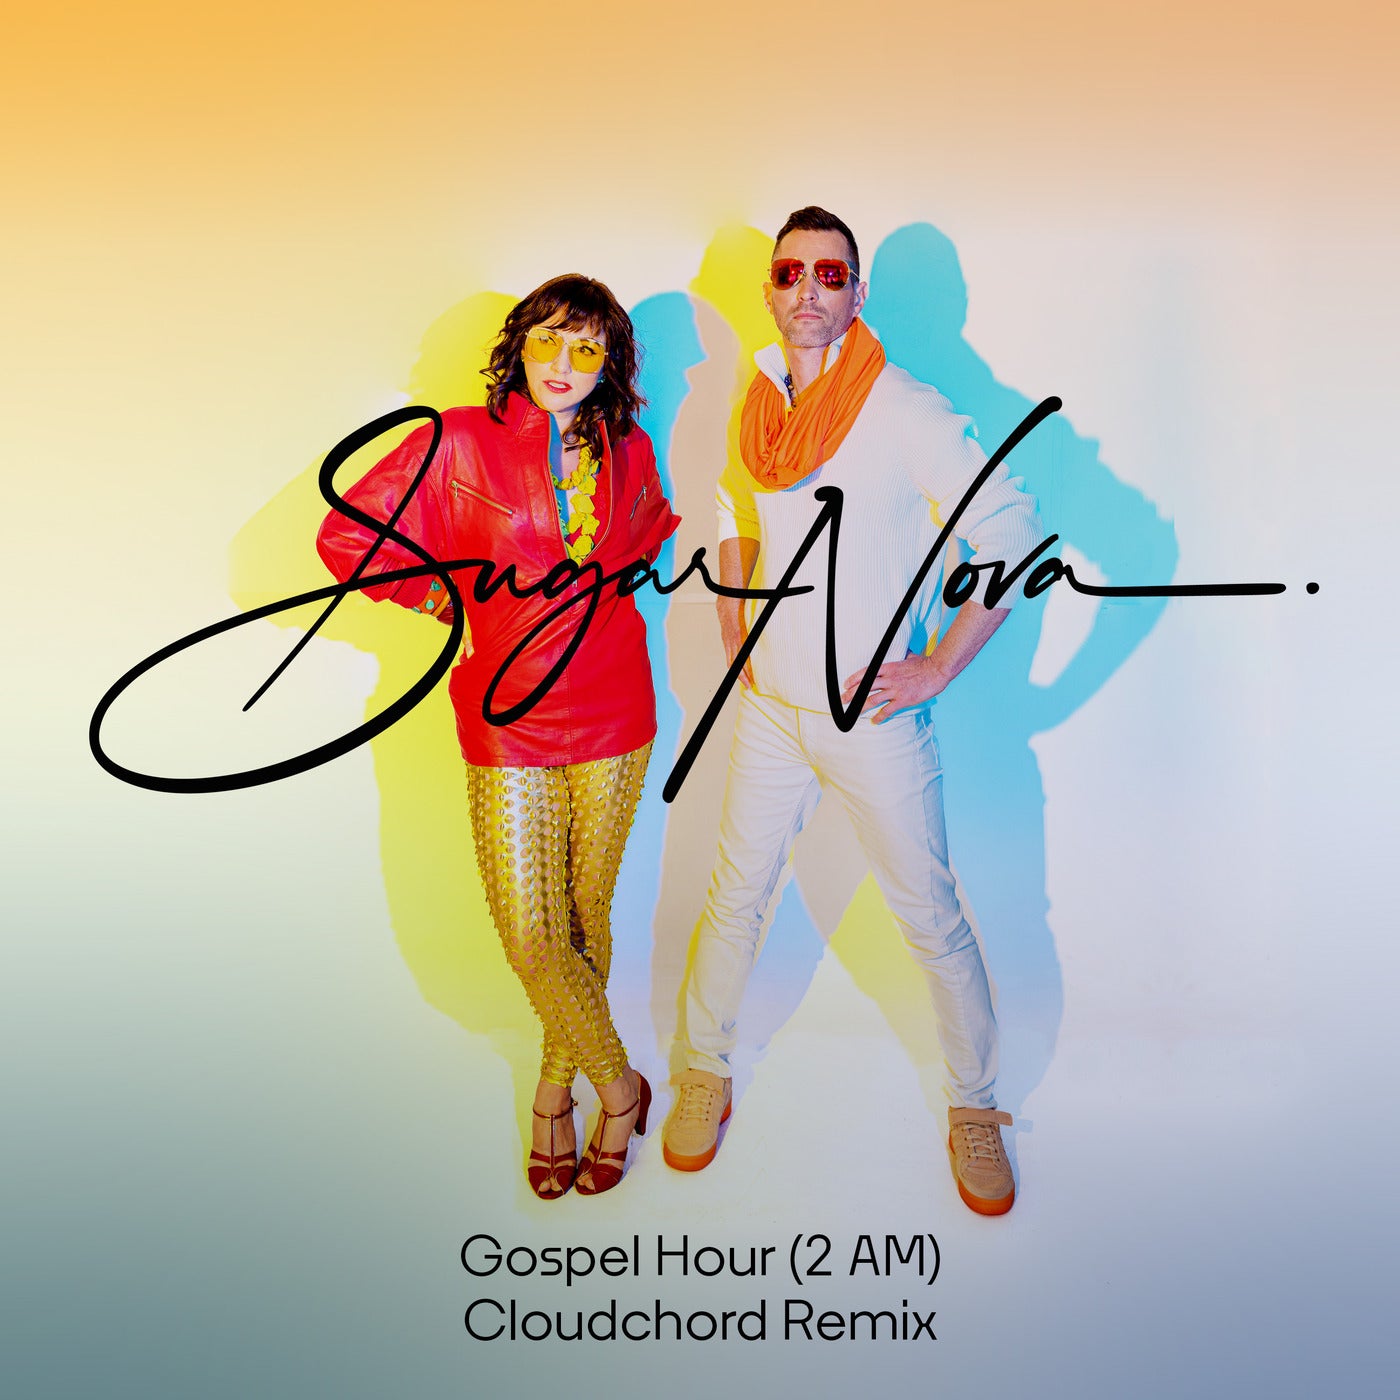 Gospel Hour (2 AM) - Cloudchord Remix